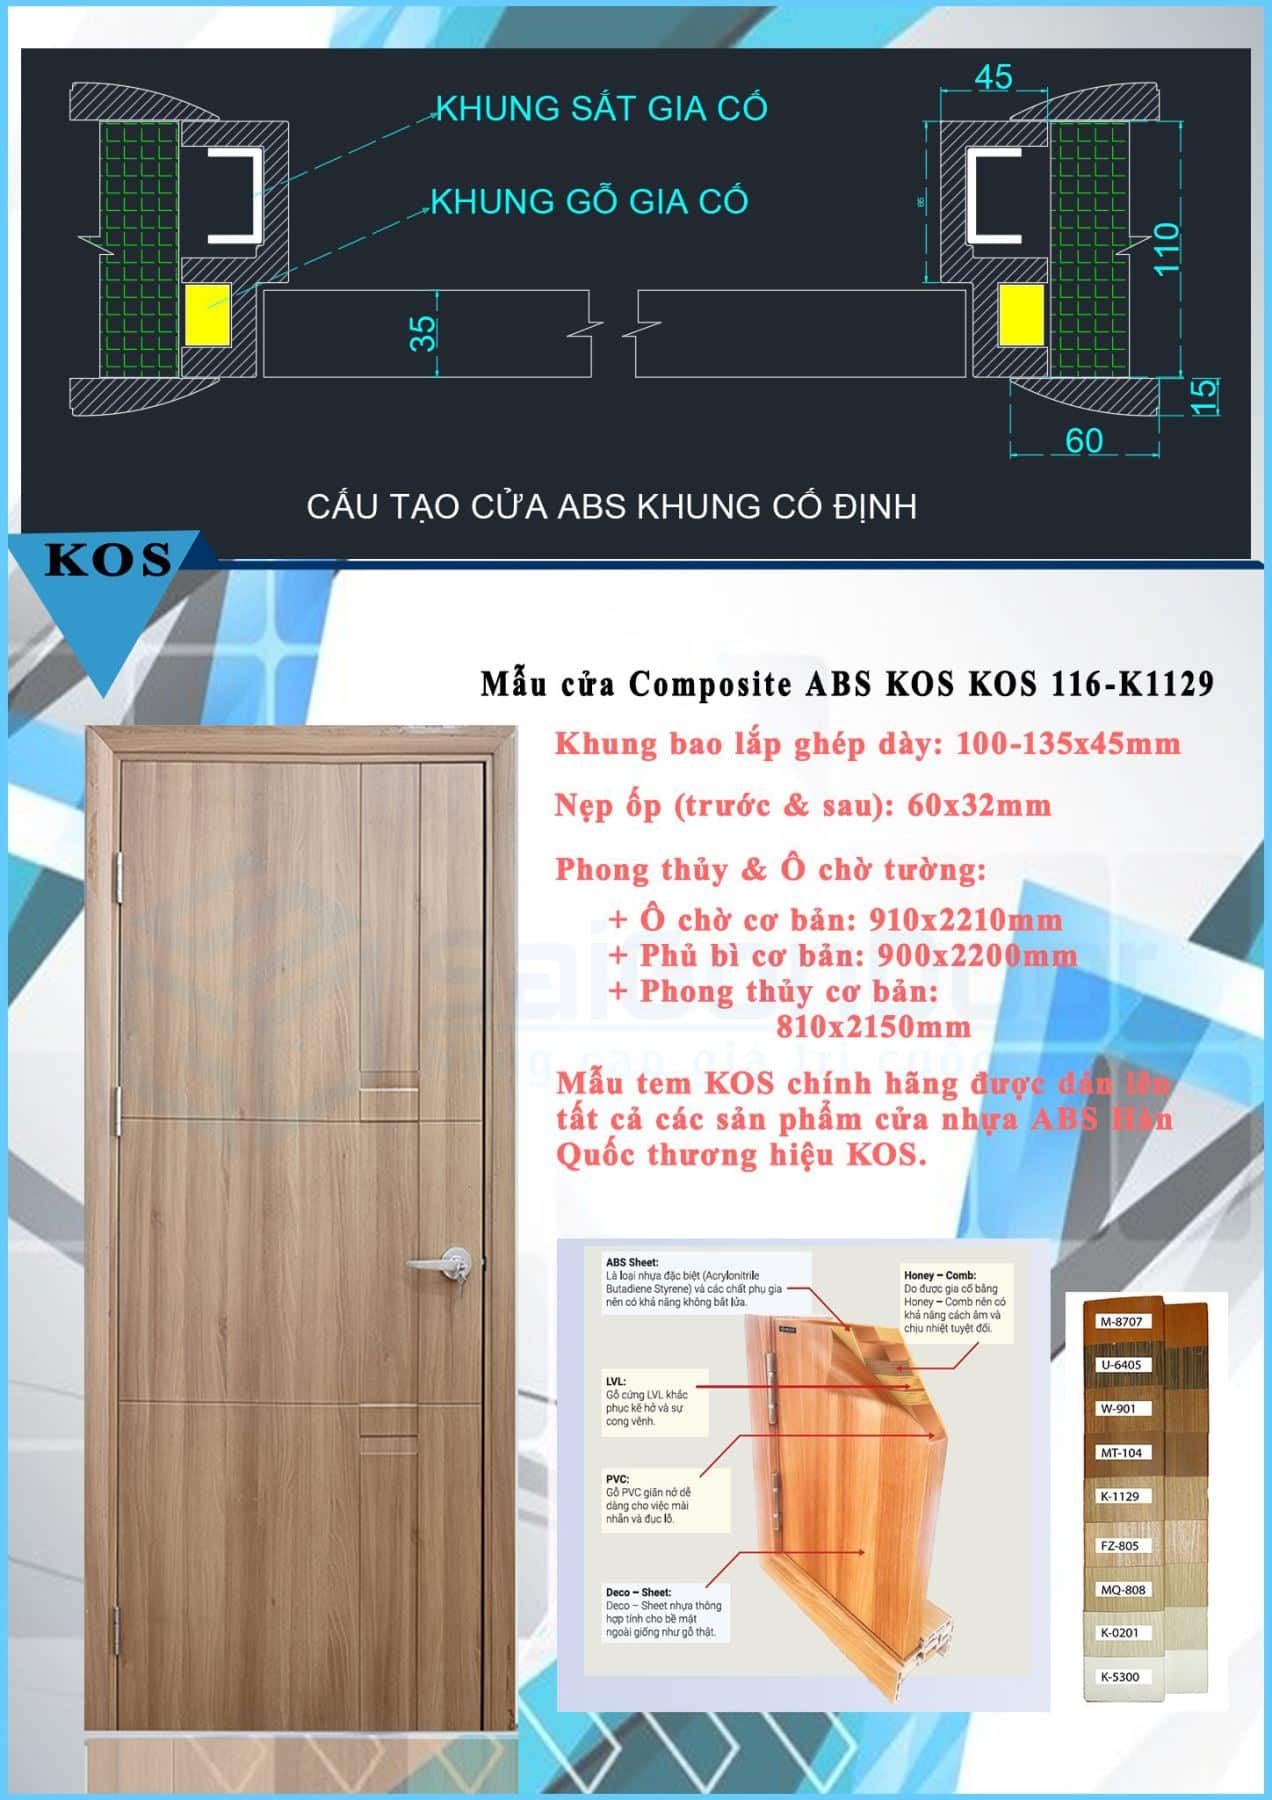 Hình cánh cửa và mặt cắt góc cấu tạo cửa nhựa ABS Hàn Quốc